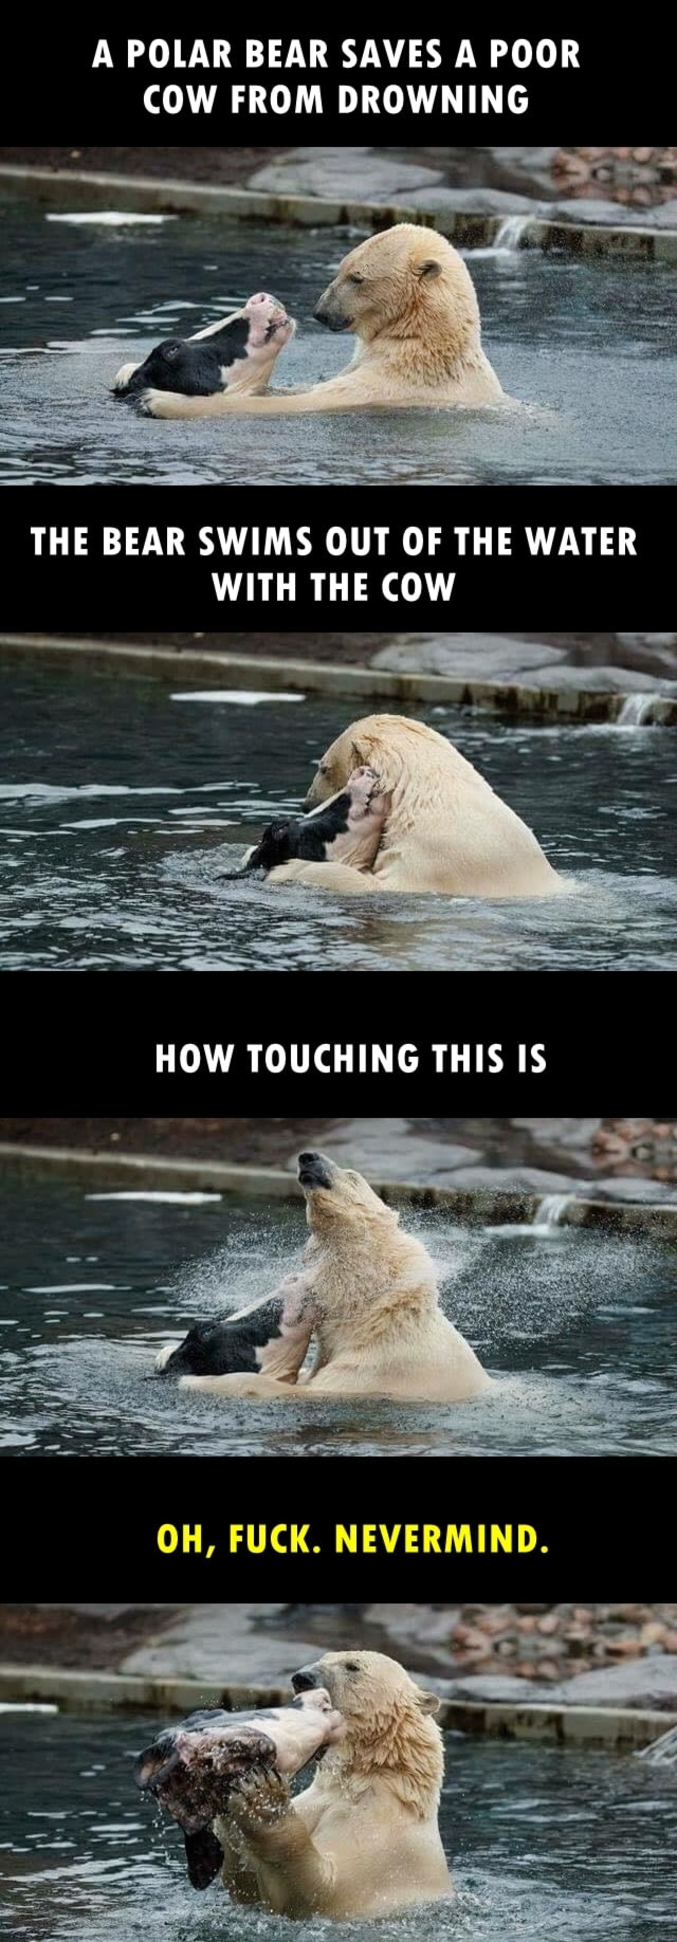 Bon bah voilà, quoi...

"Un ours sauve une malheureuse vache de la noyade 
L'ours nage hors de l'eau avec la vache
Quelle action touchante...
Ho. Merde. J'ai rien dit..."